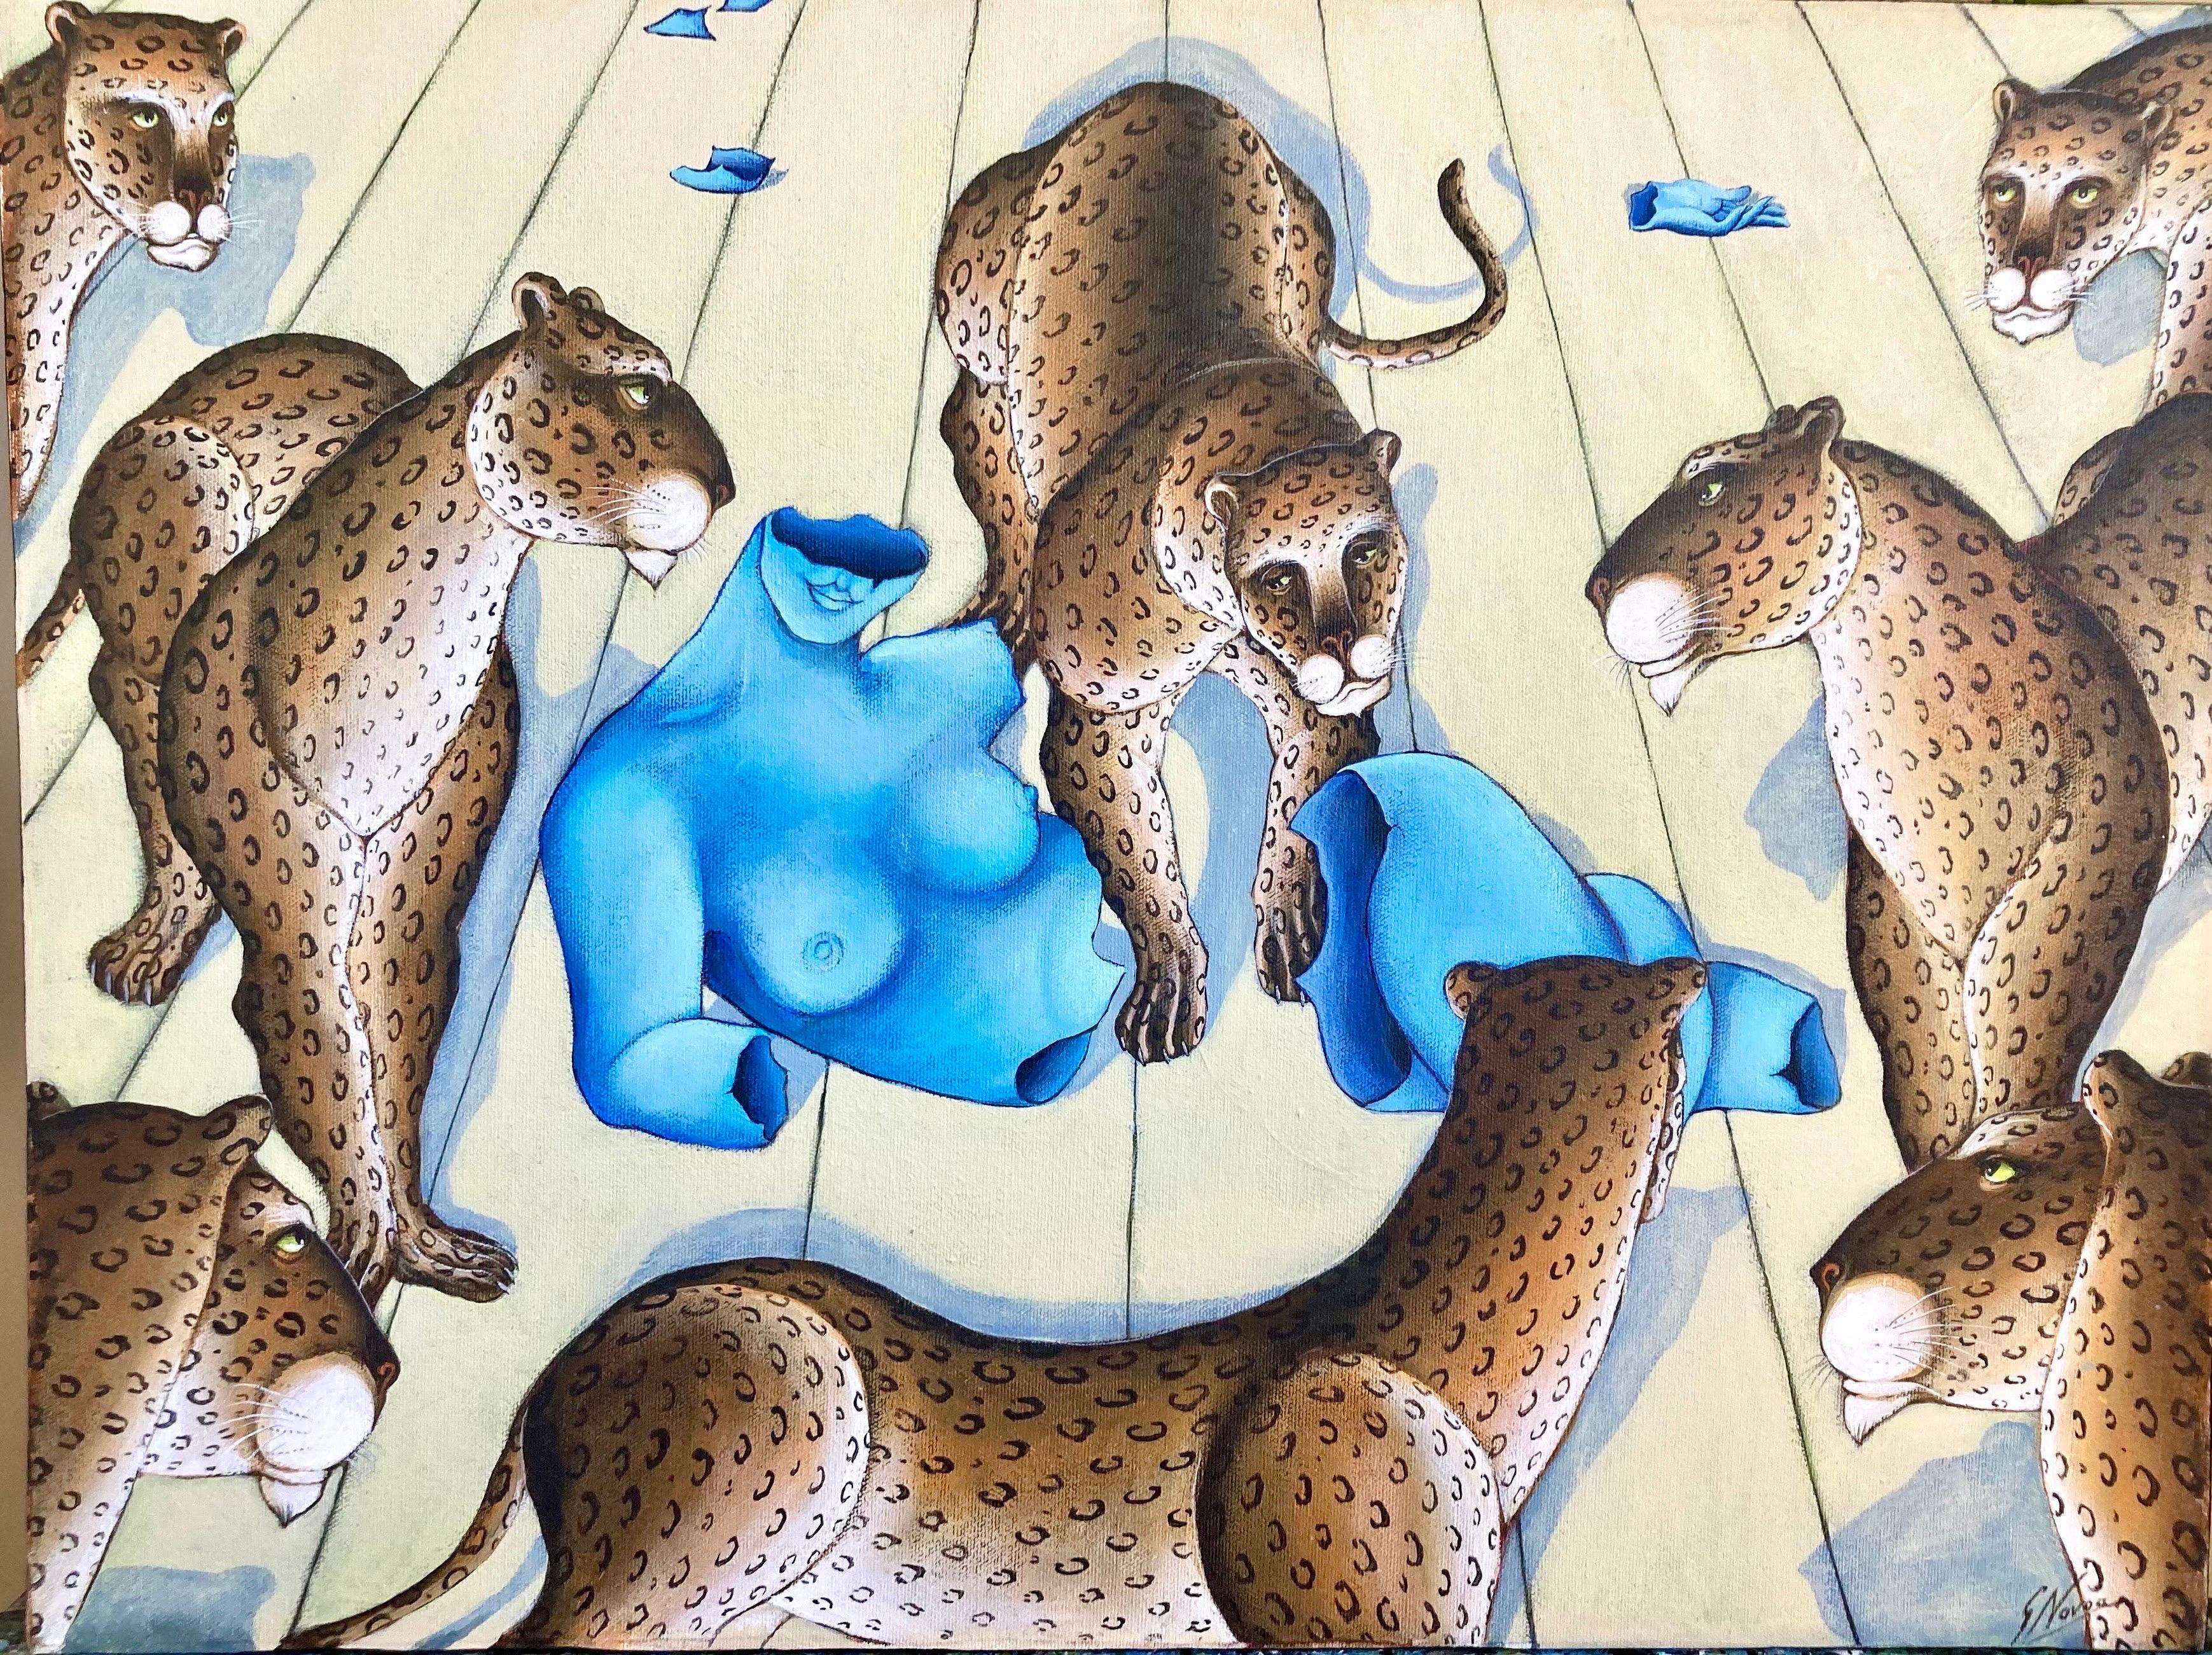 Leopards Nude Venus Animal Paradise Jungle Painting Surrealist Art Gustavo Novoa